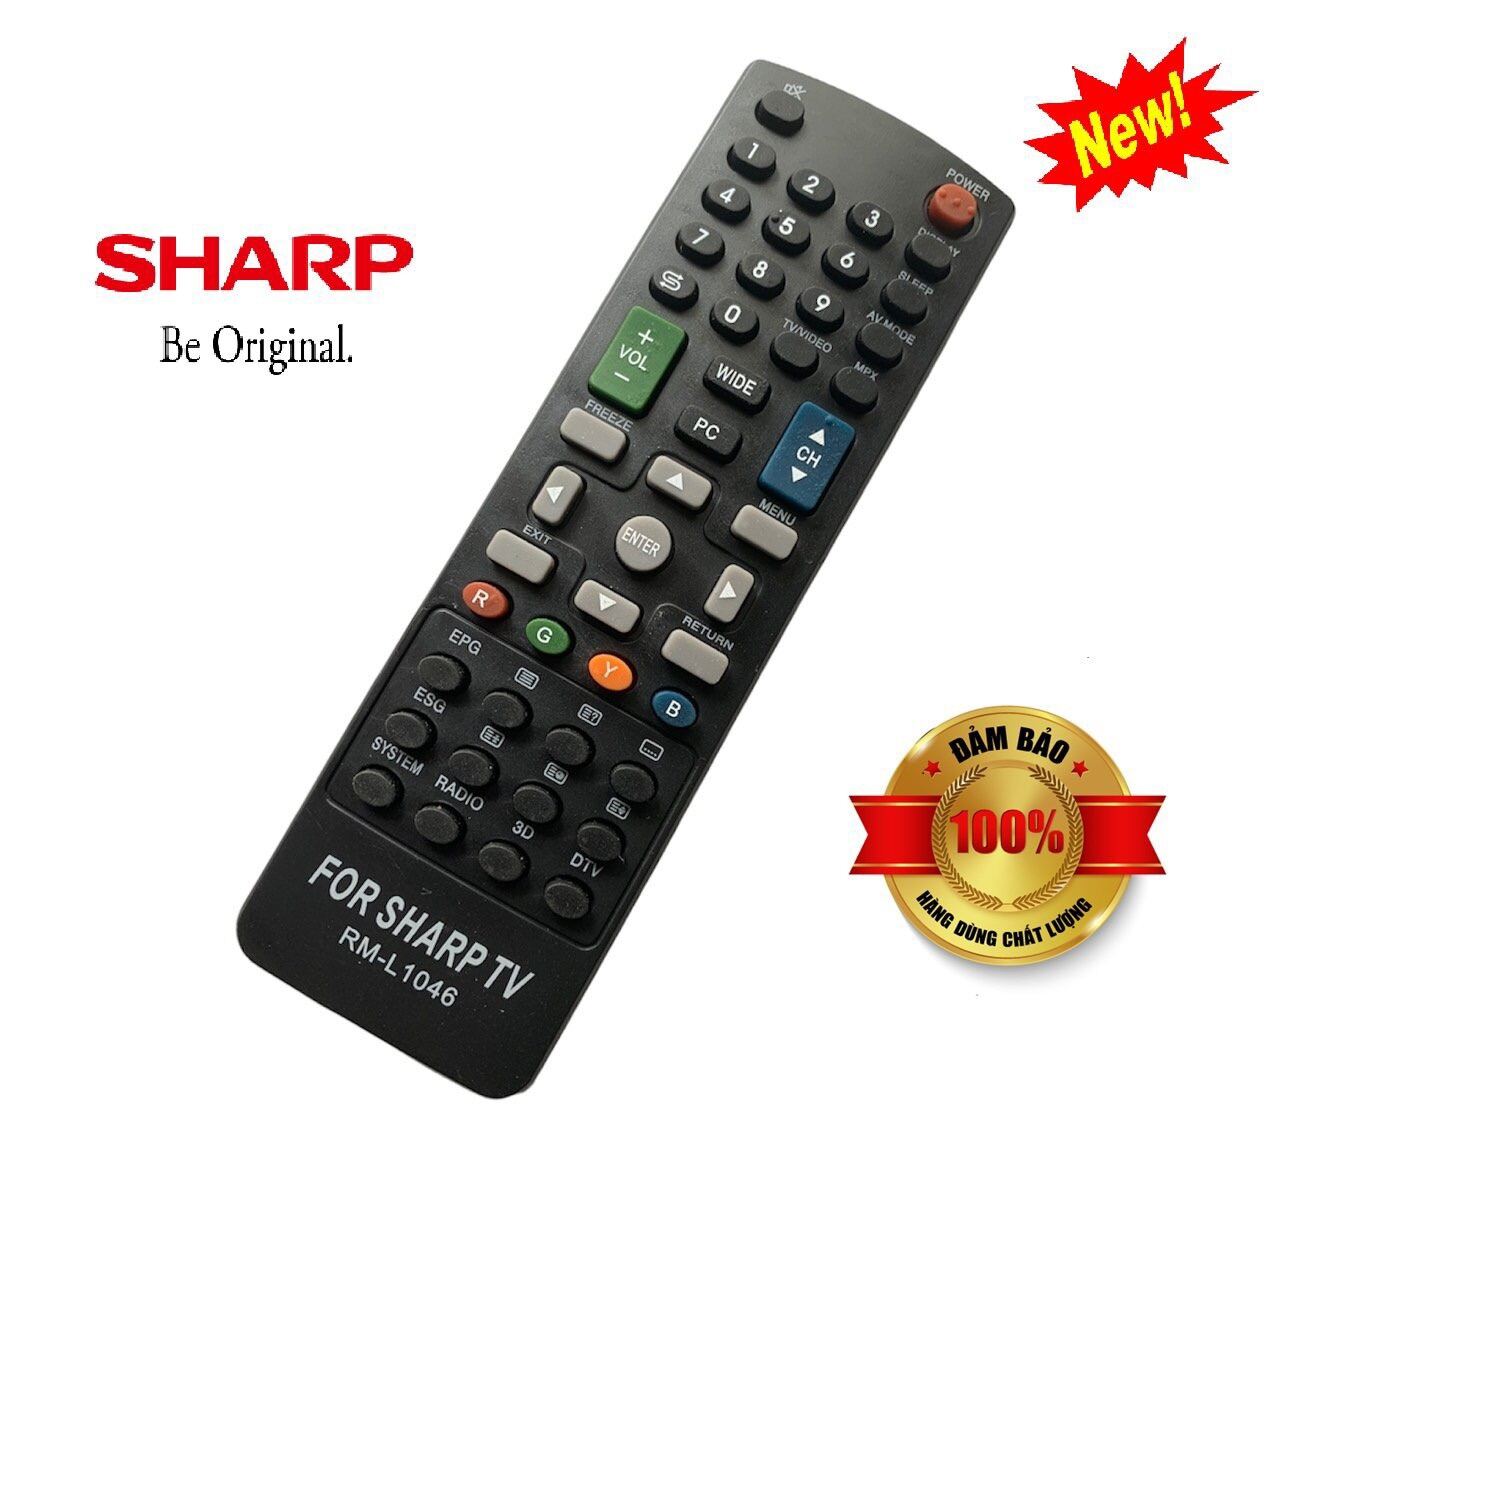 Bảng giá Điều khiển tivi Sharp RM-L1046. Hàng mới, loại tốt